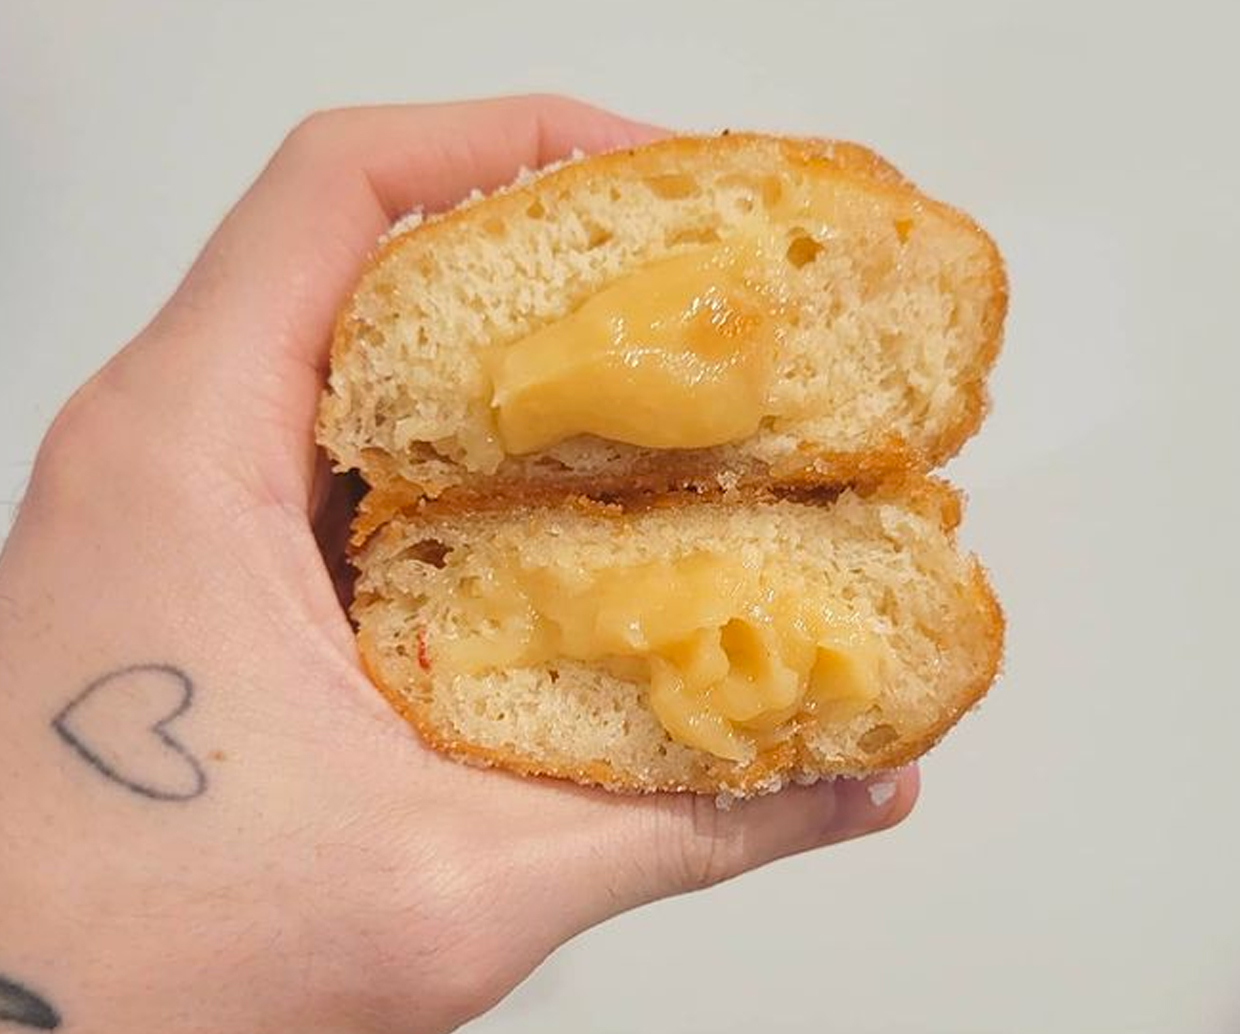 hand holding lemon filled doughnuts